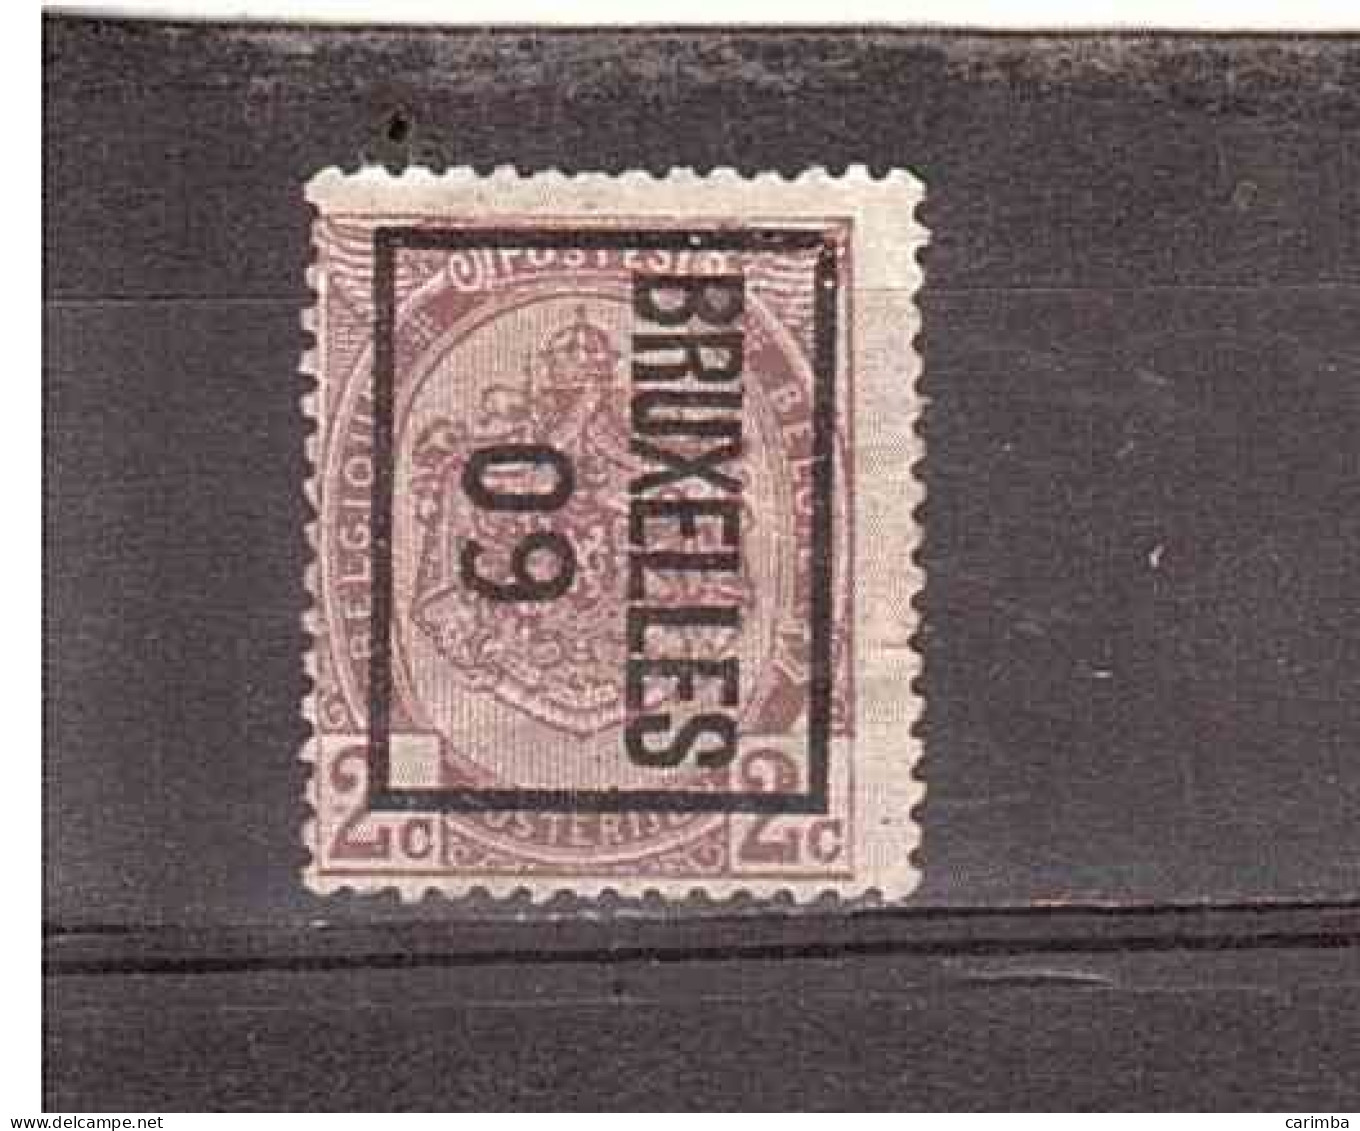 BRUXELLES 09 - Typo Precancels 1906-12 (Coat Of Arms)